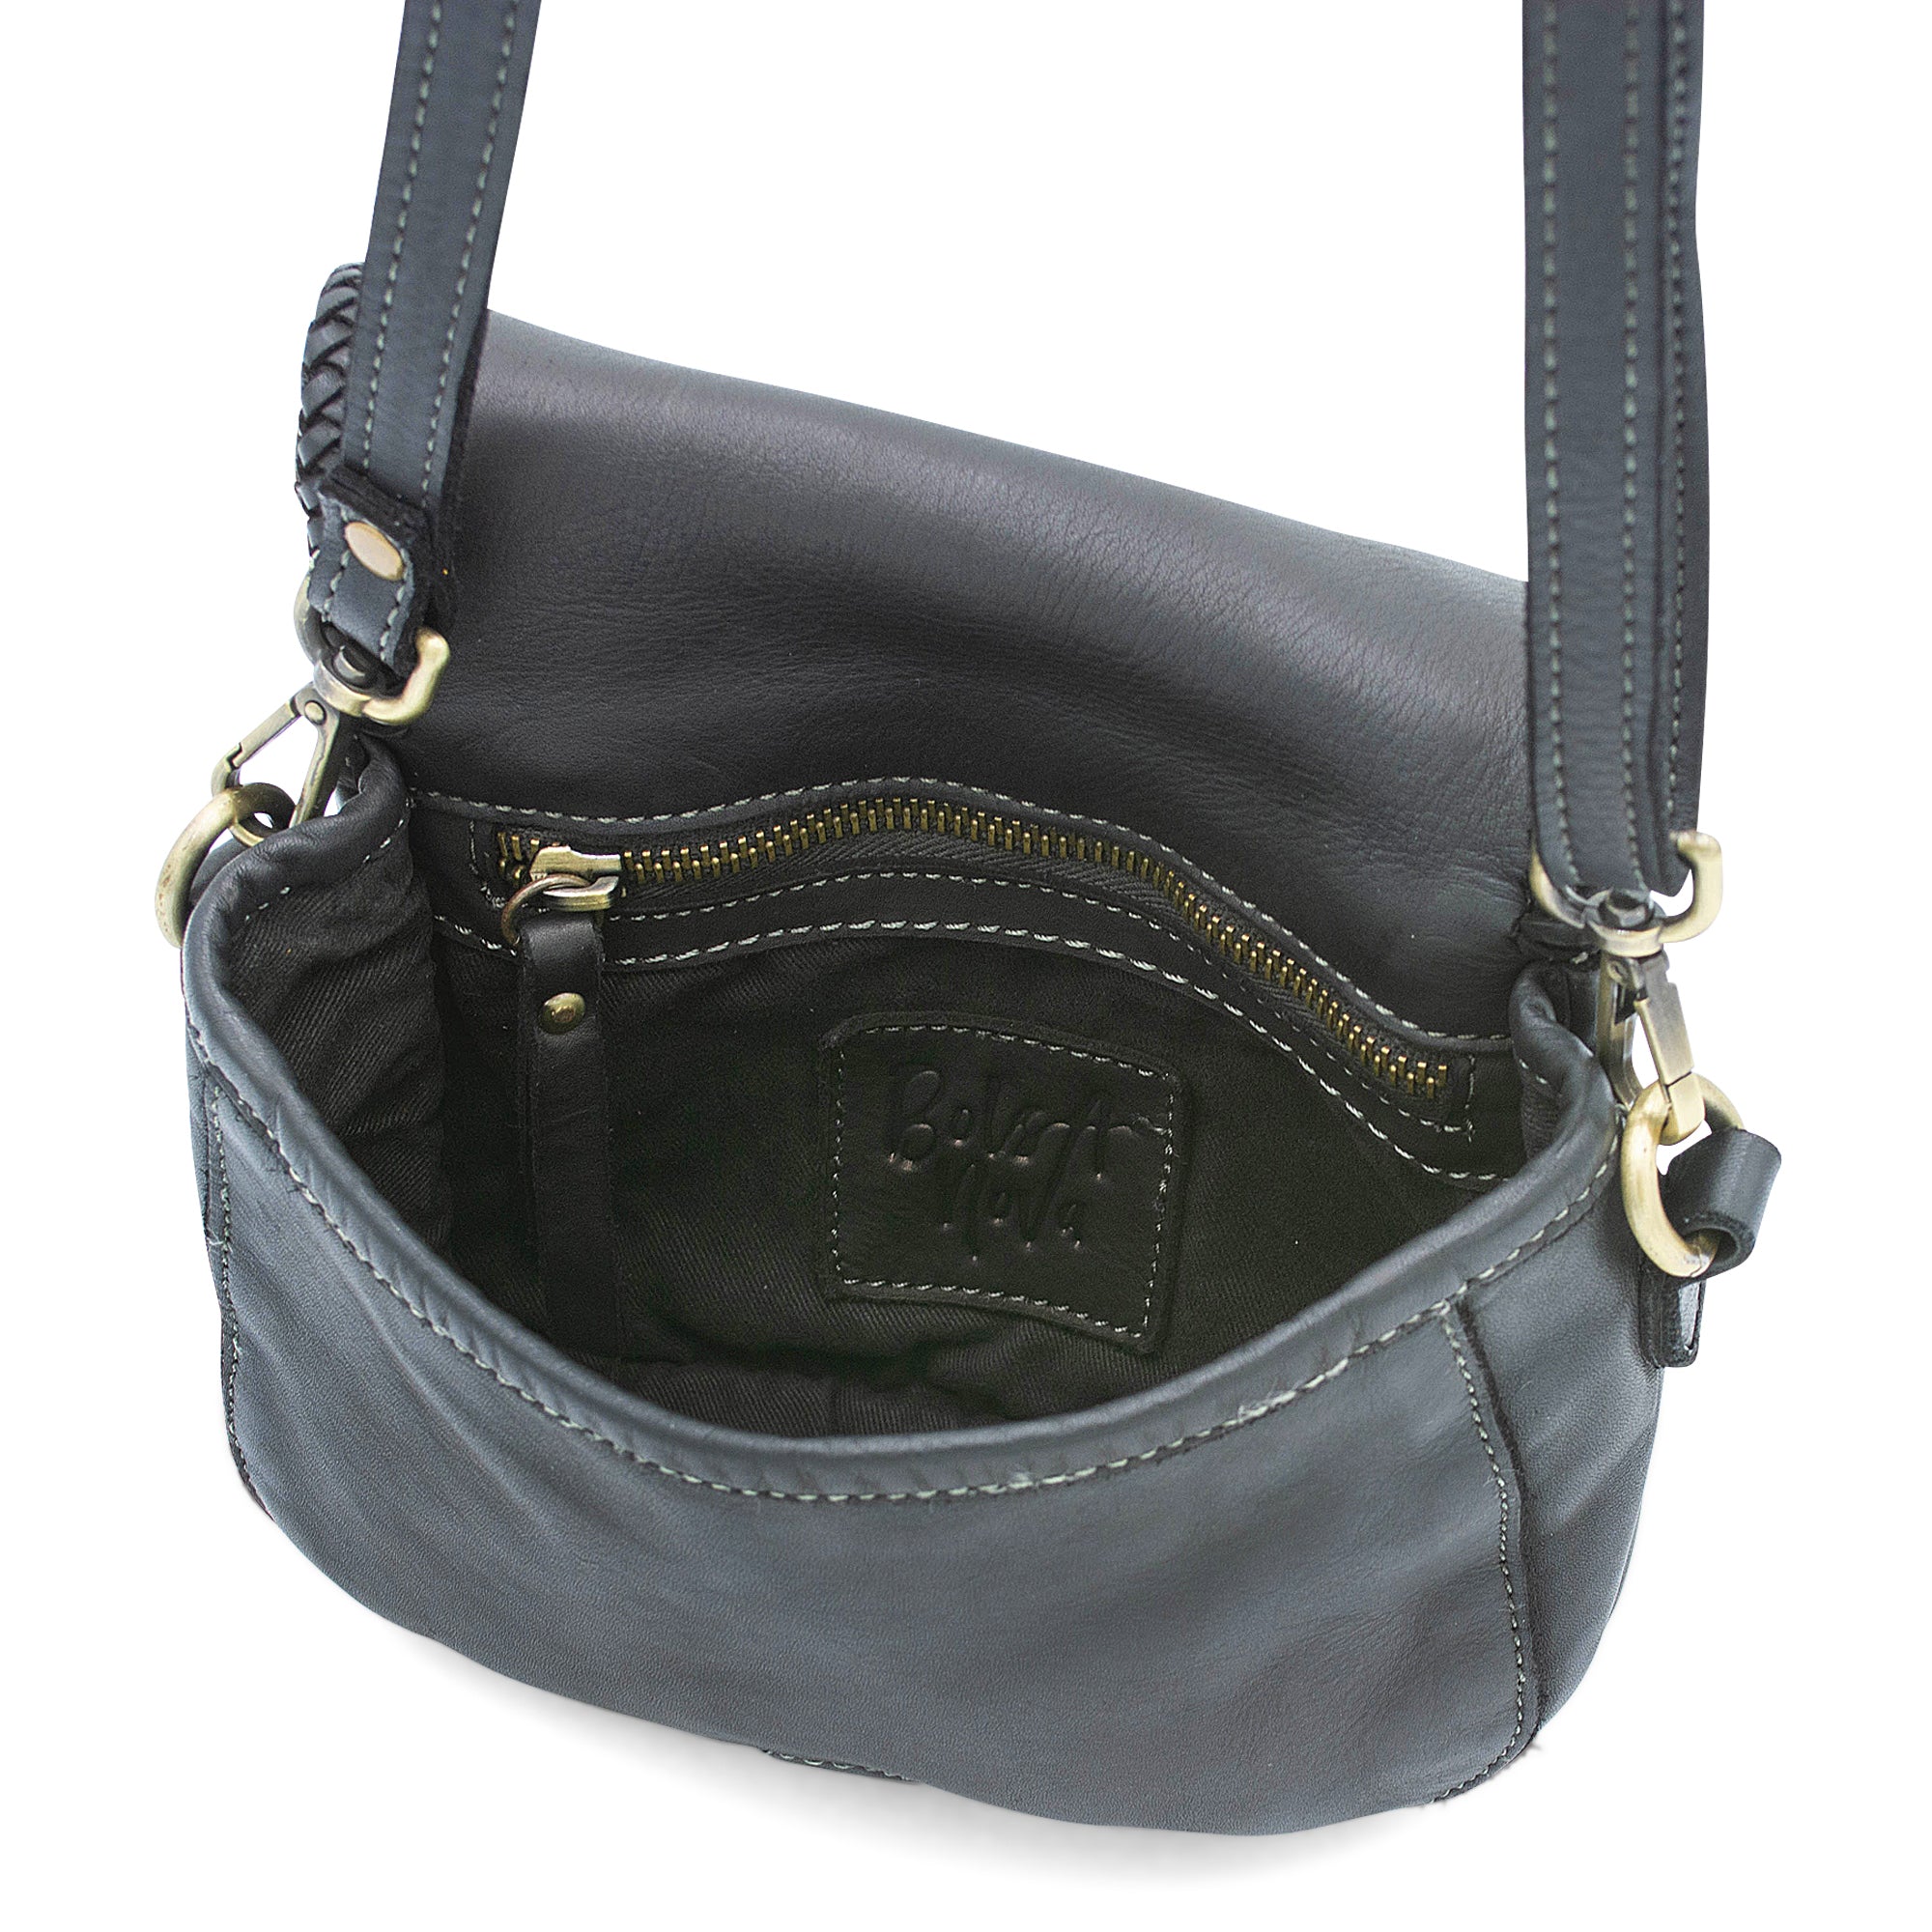 Naples Saddle Bag in Black